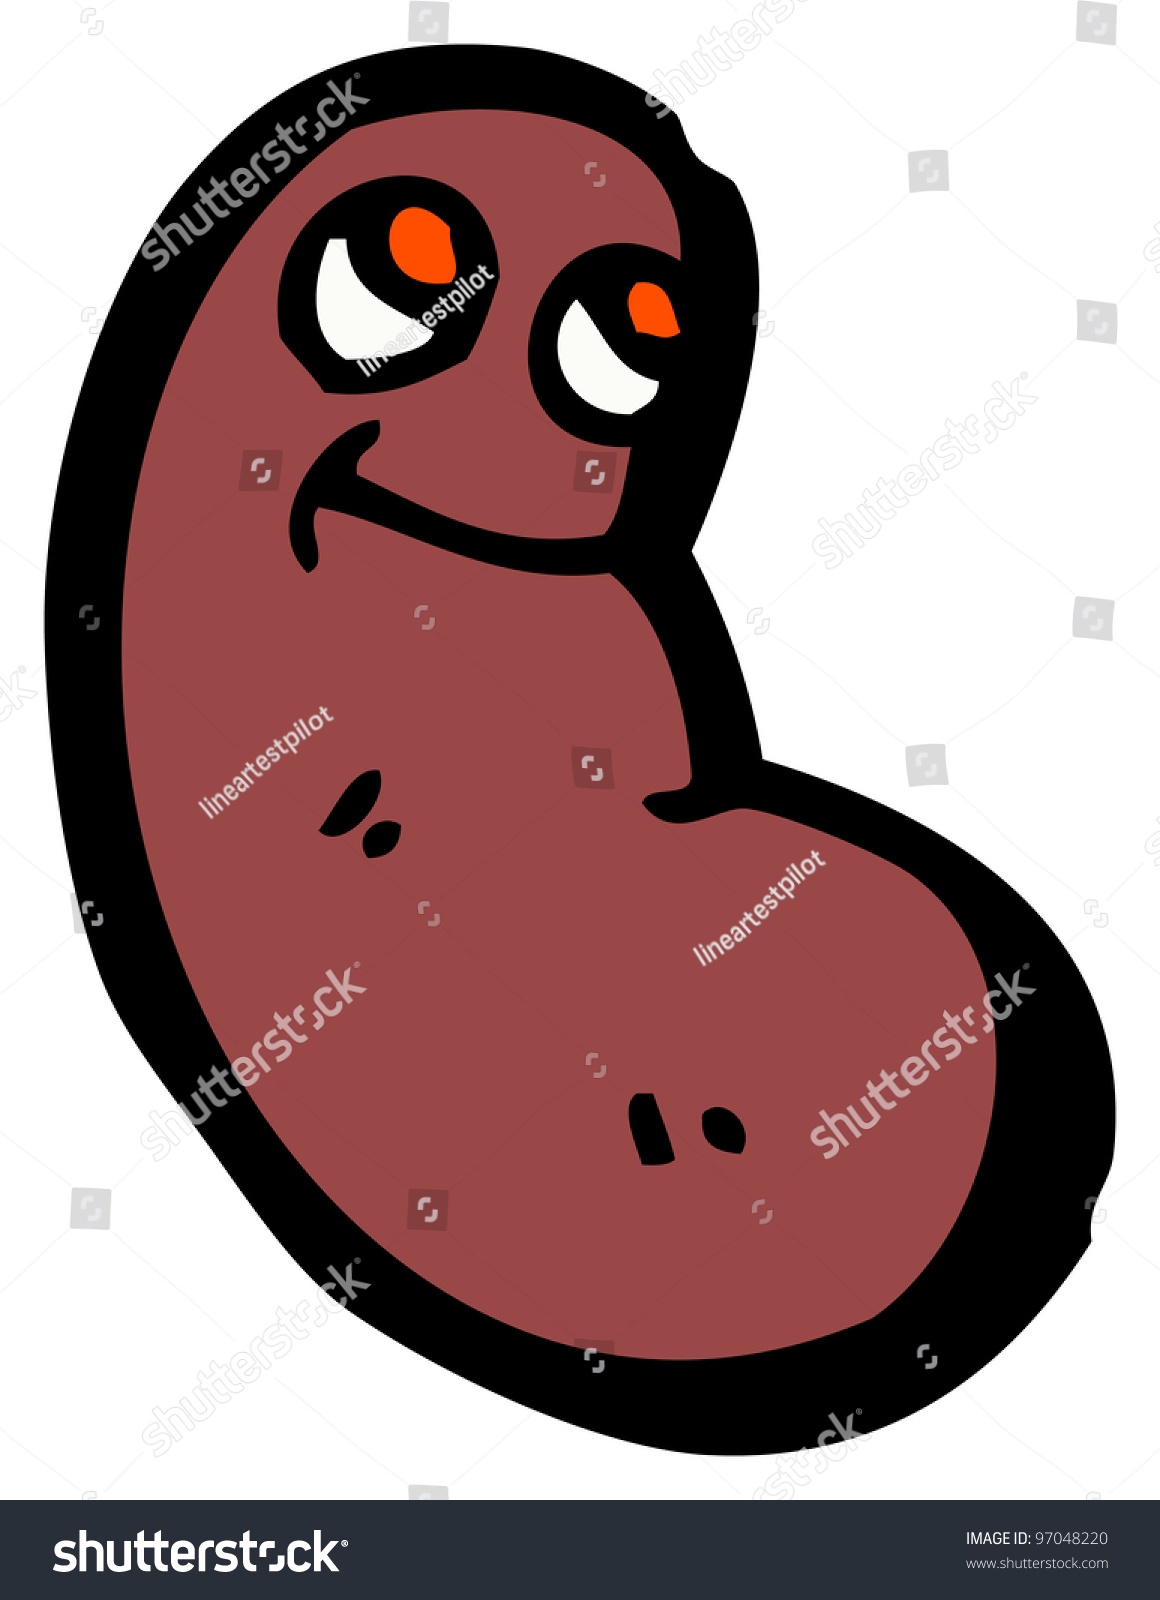 Cartoon Kidney Bean Stock Illustration 97048220 - Shutterstock